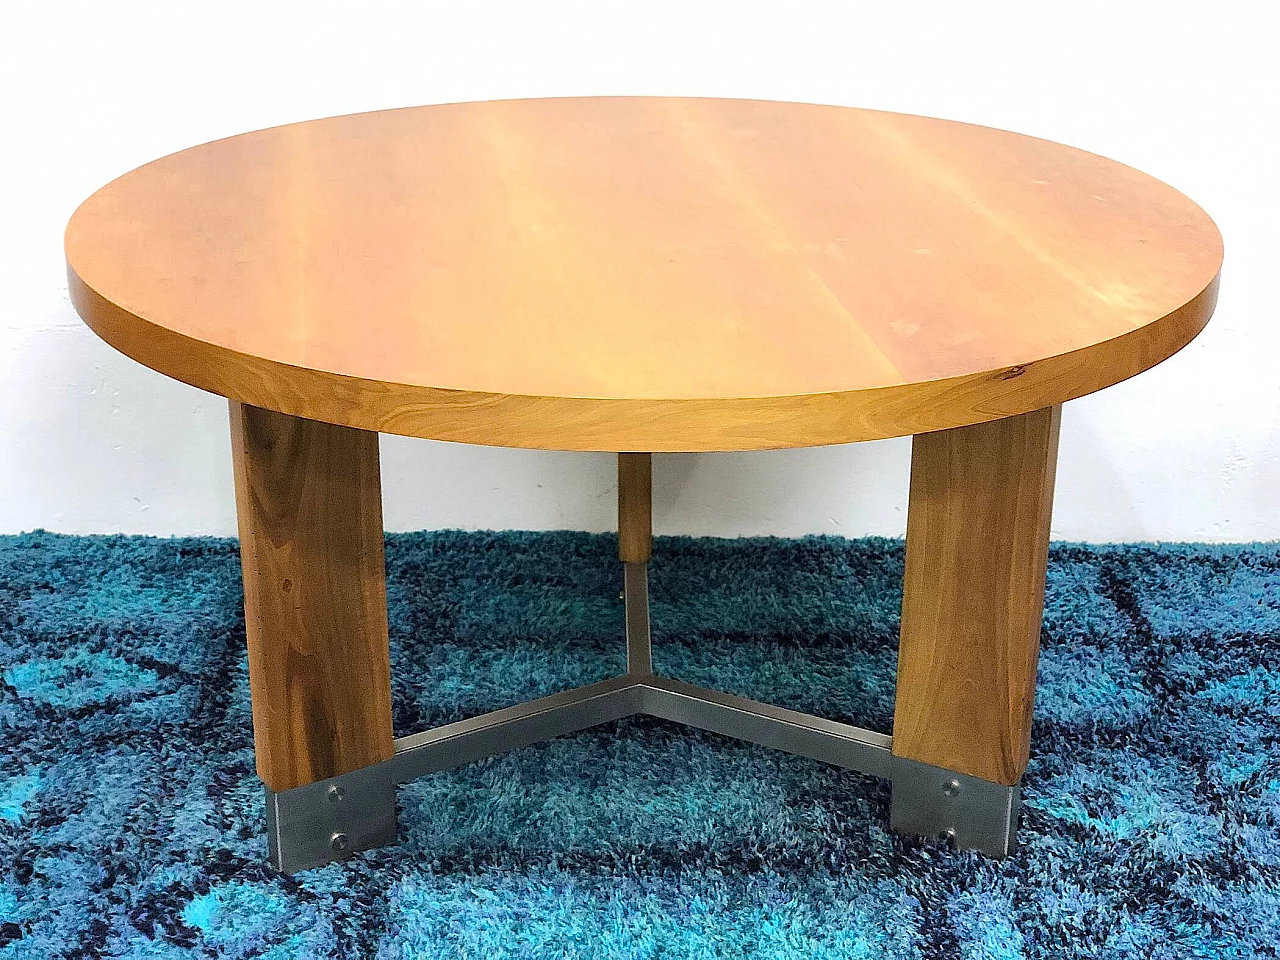 Beechwood and steel table, 1960s 1307449